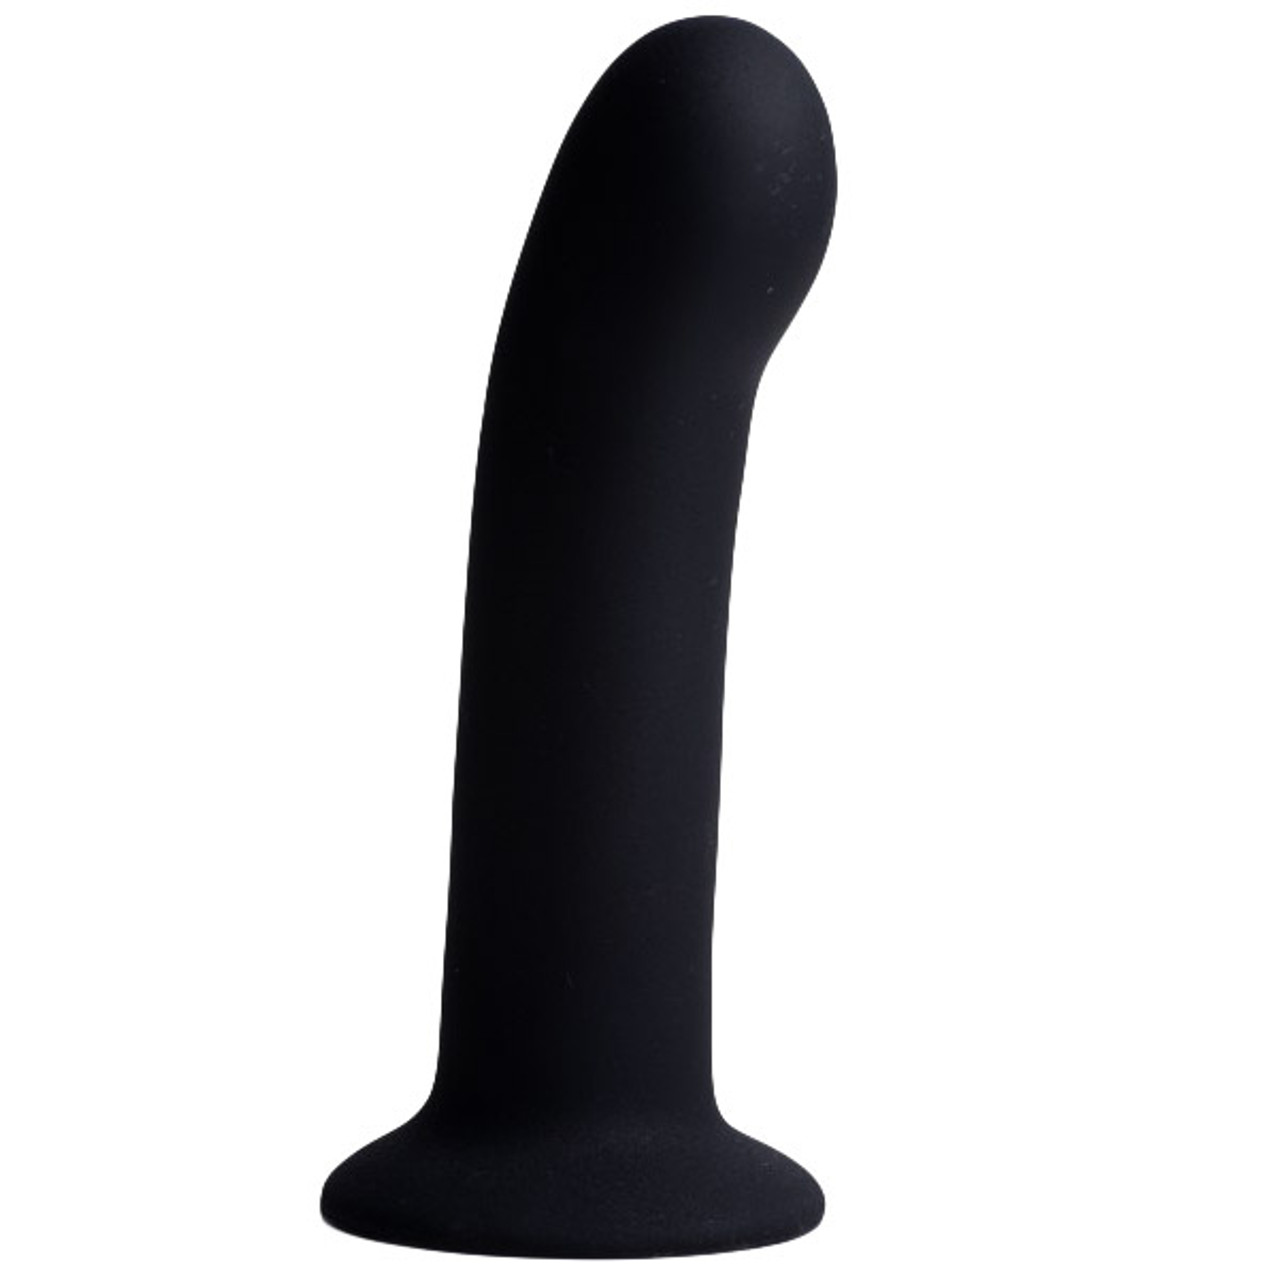 Strap U Large Black Silicone Strap-On Harness Dildo - Dallas Novelty